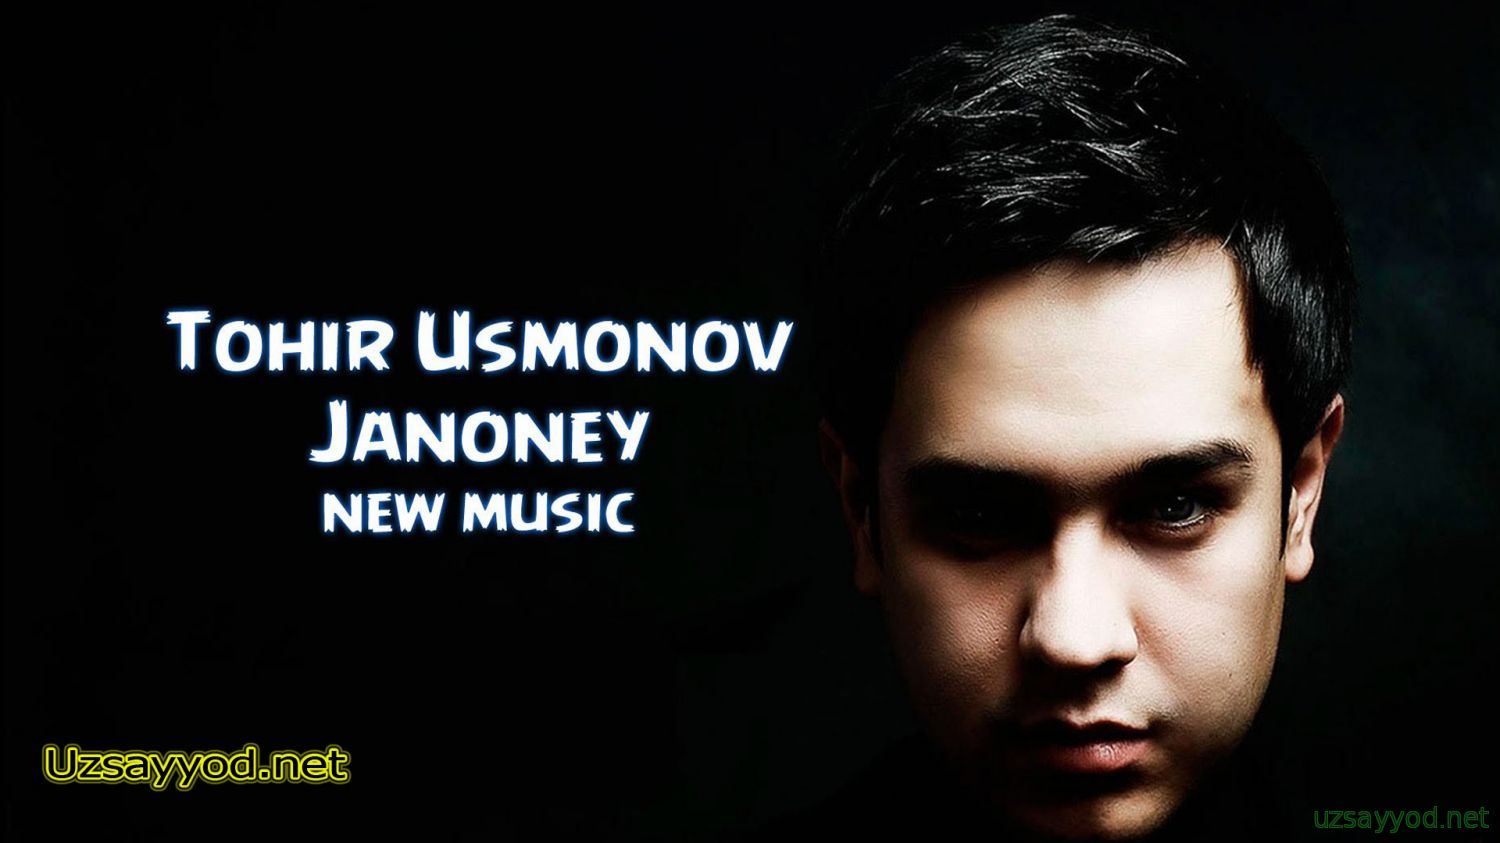 Tohir Usmonov - Janoney (new music)